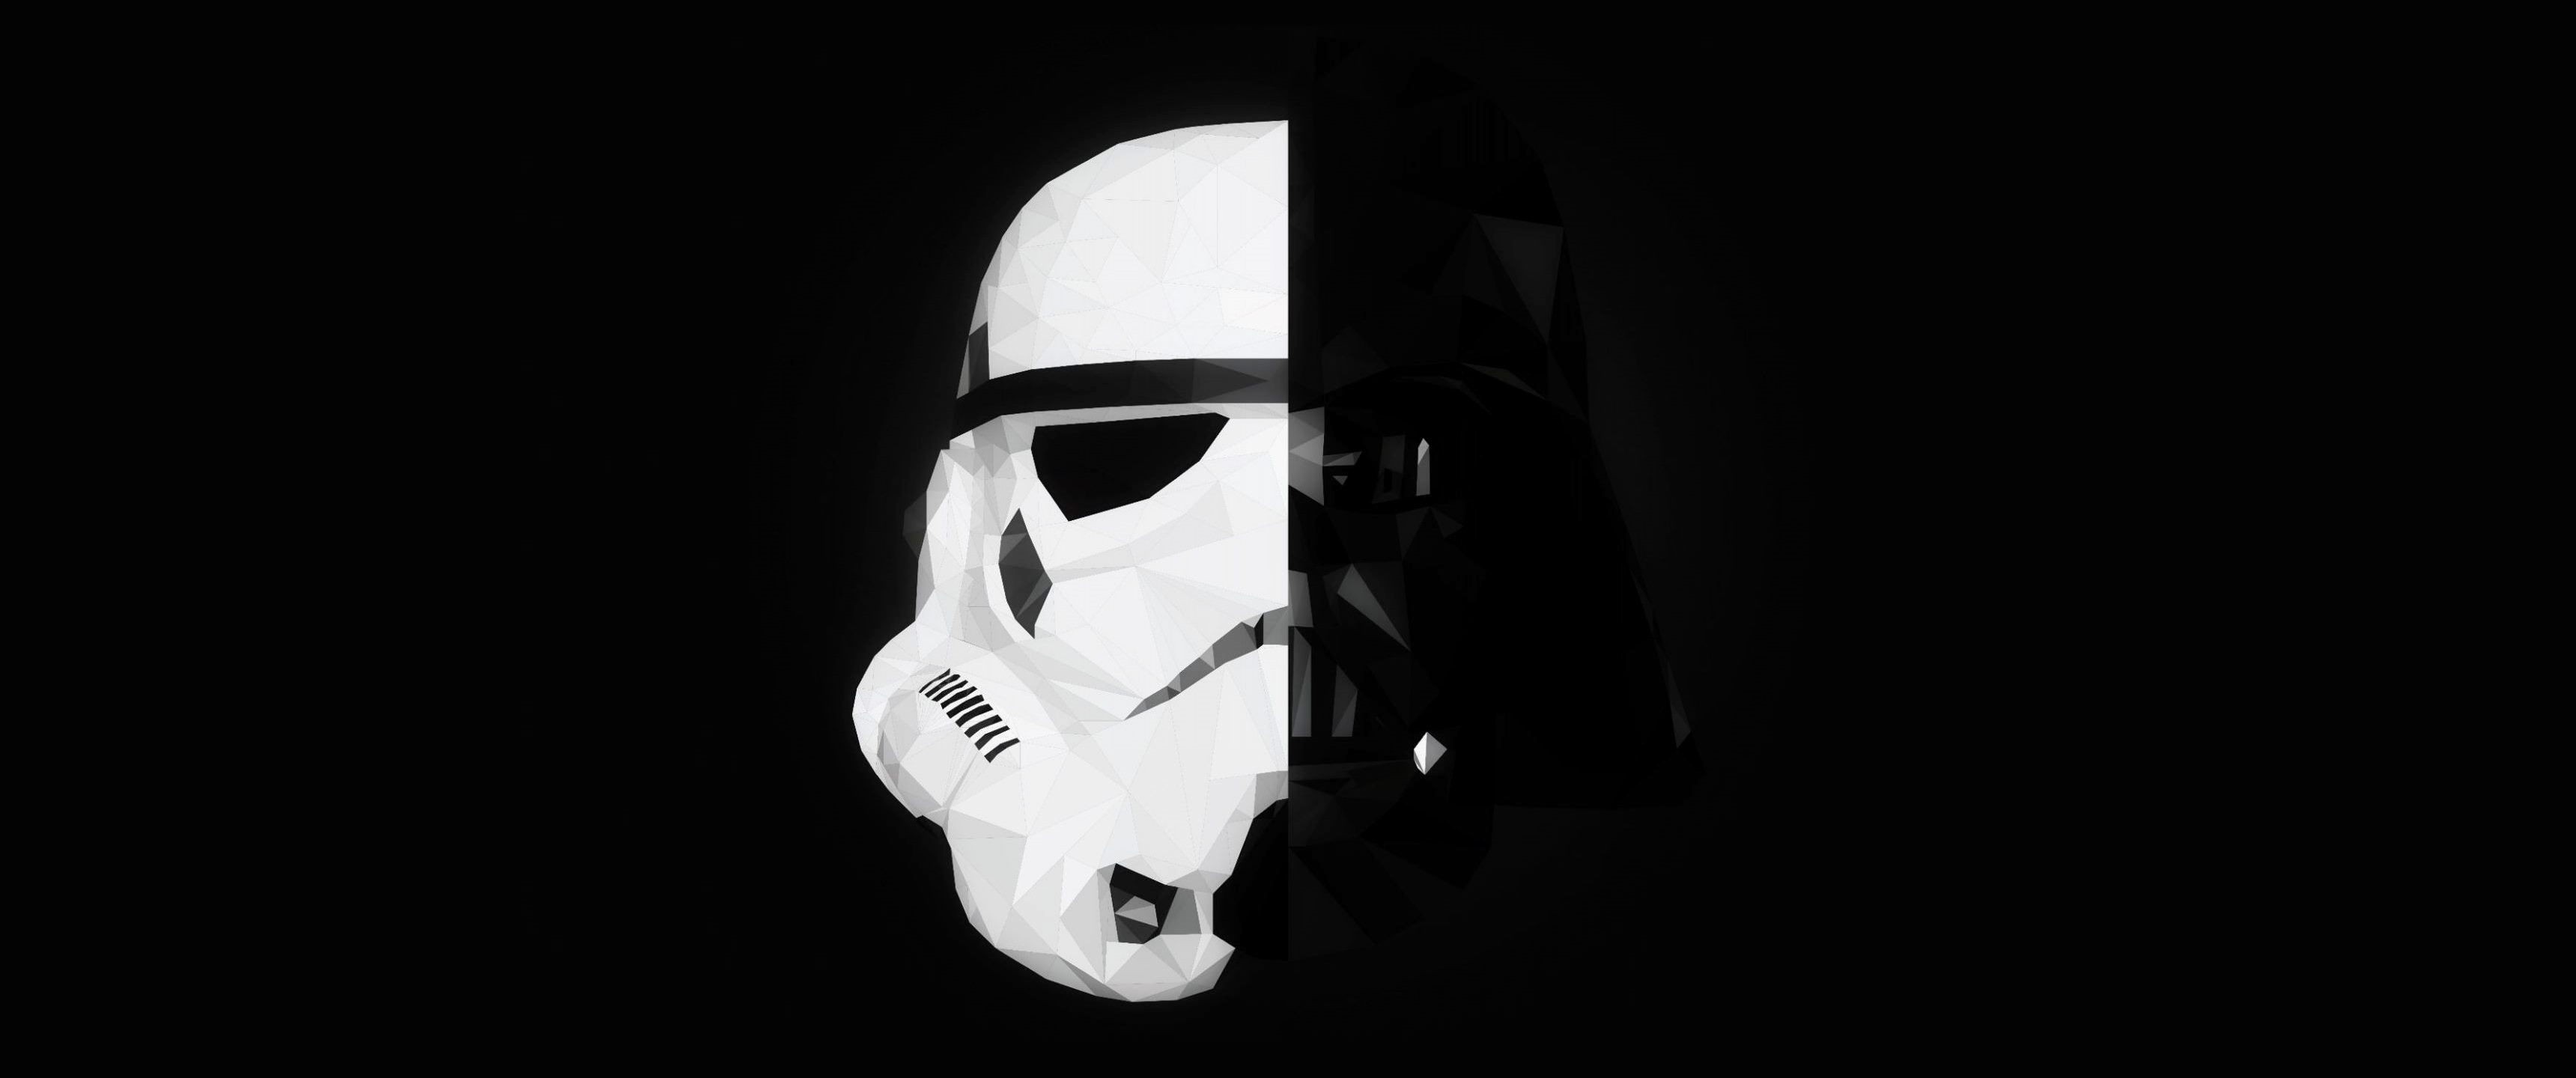 Star Wars, Stormtrooper, Darth Vader, Mask, Splitting, Minimalism Wallpapers HD / Desktop and Mobile Backgrounds